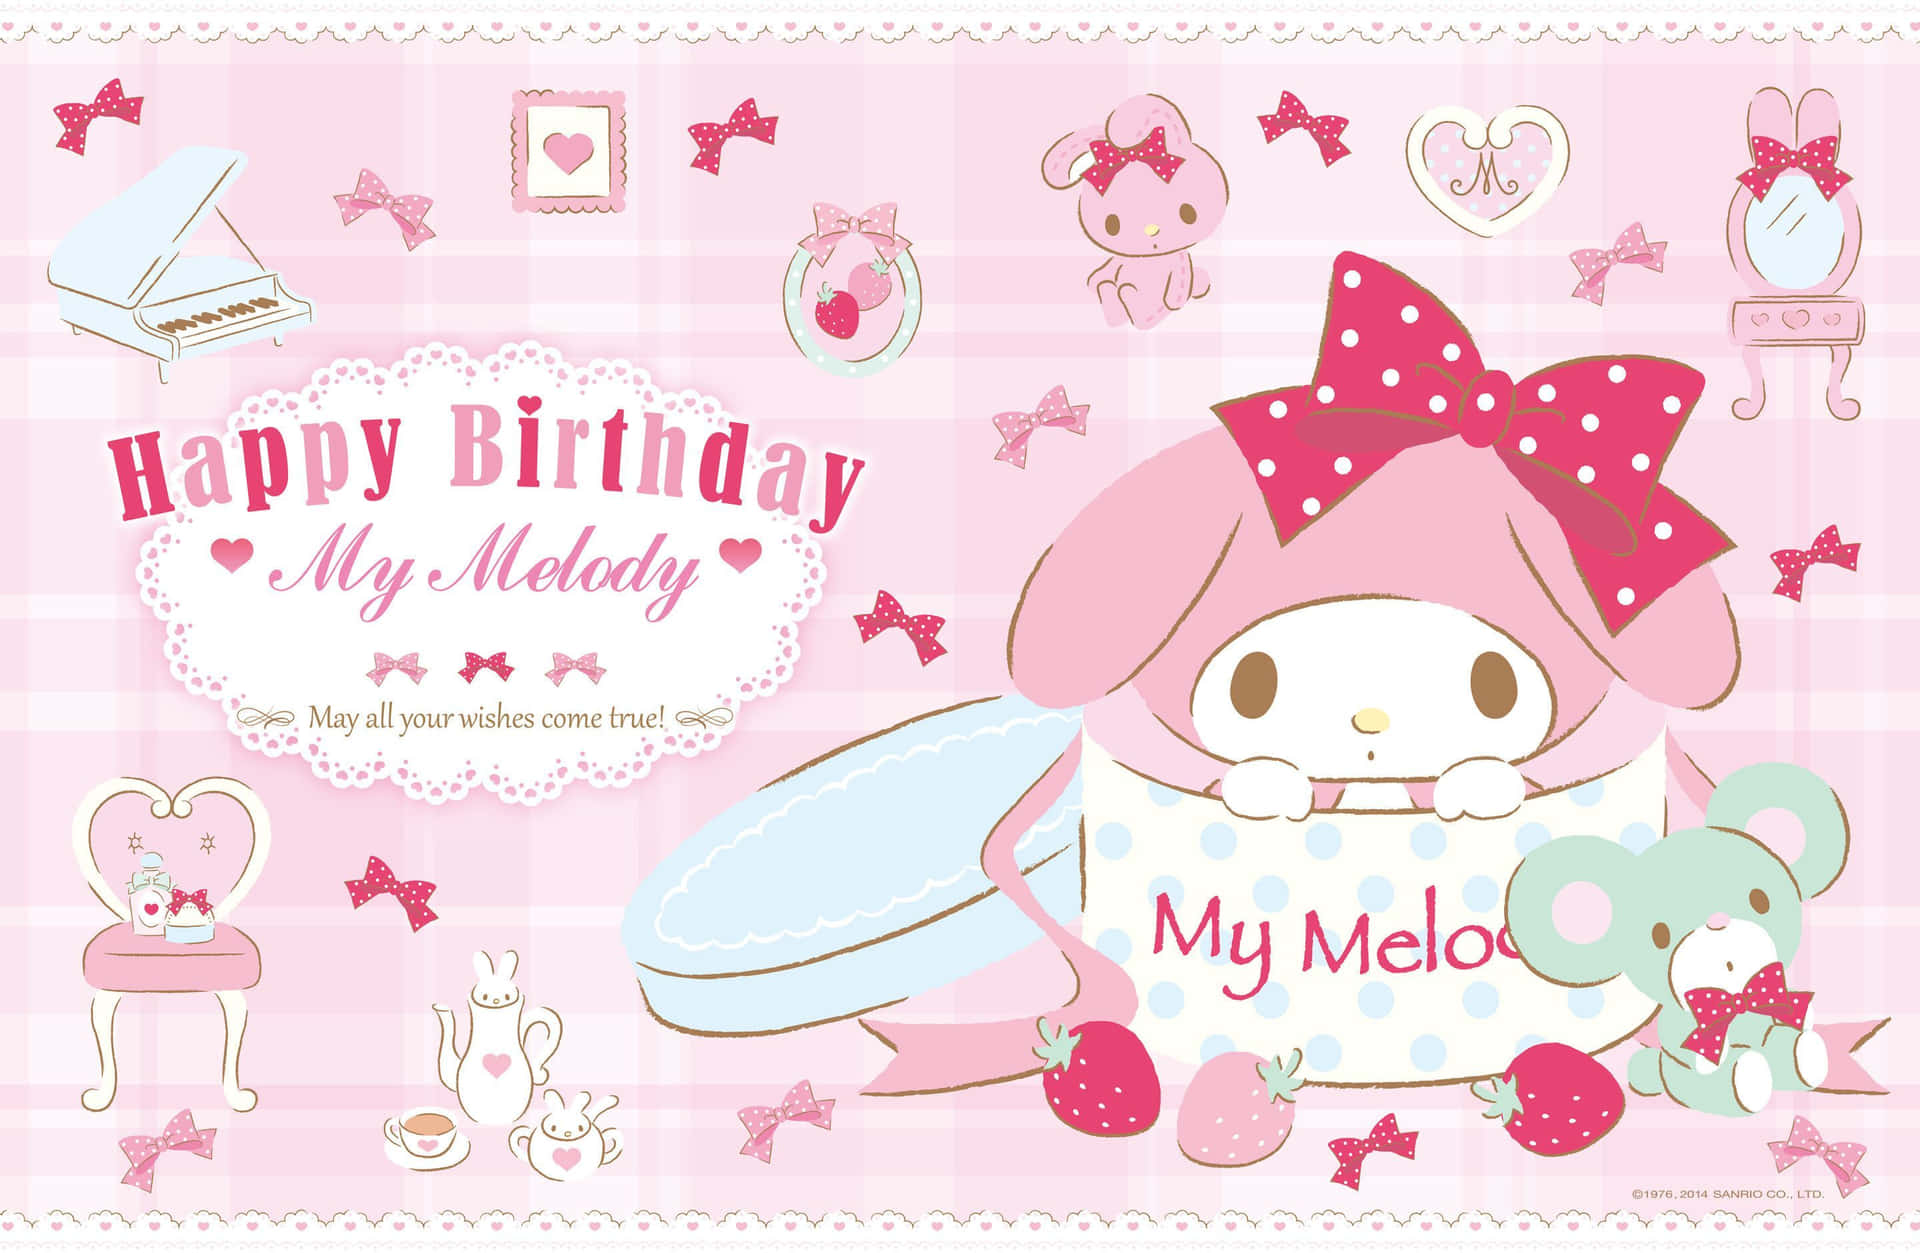 Allesgute Zum Geburtstag, Mein Melody-desktop Wallpaper